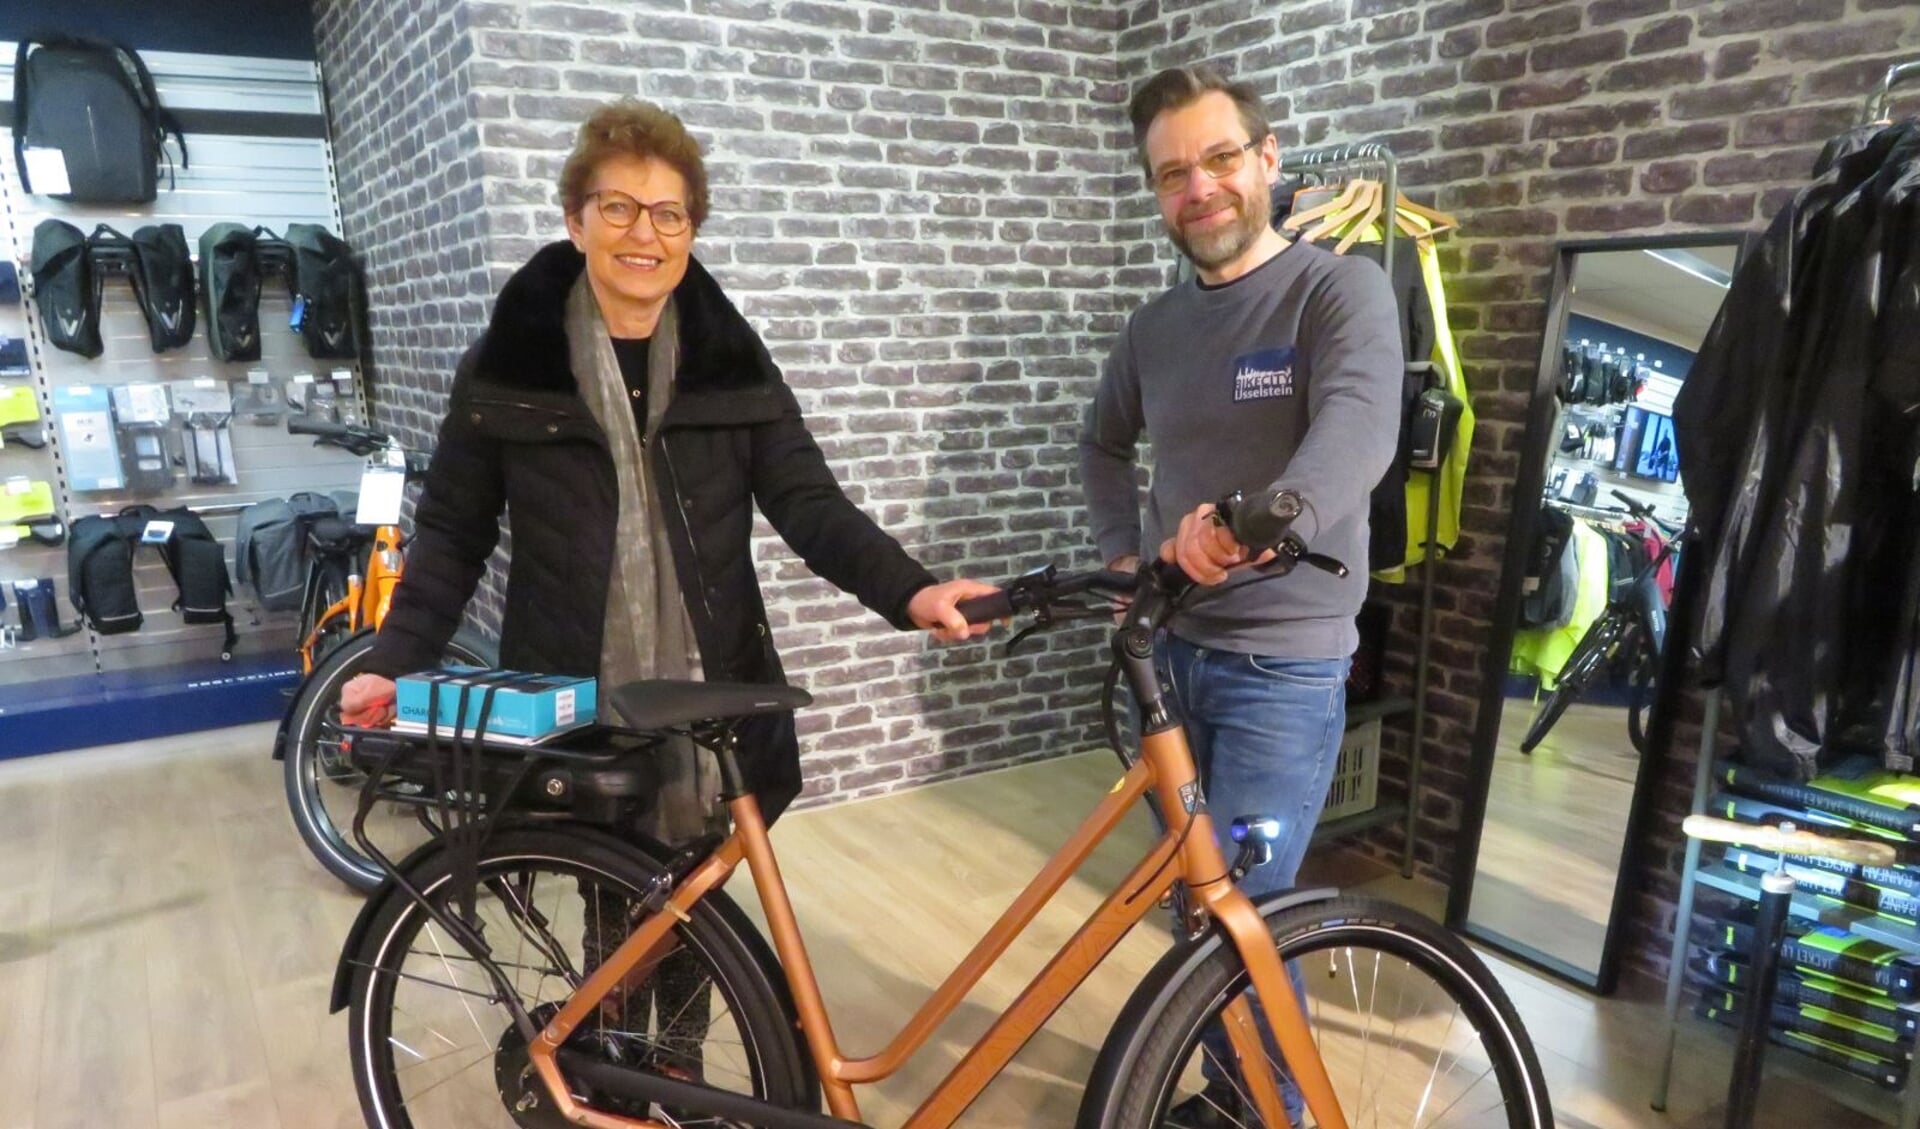 Eigenaar Peter de Bie van BikeCity overhandigt de hoofdprijs, een e-bike, aan Pien Breedveld.